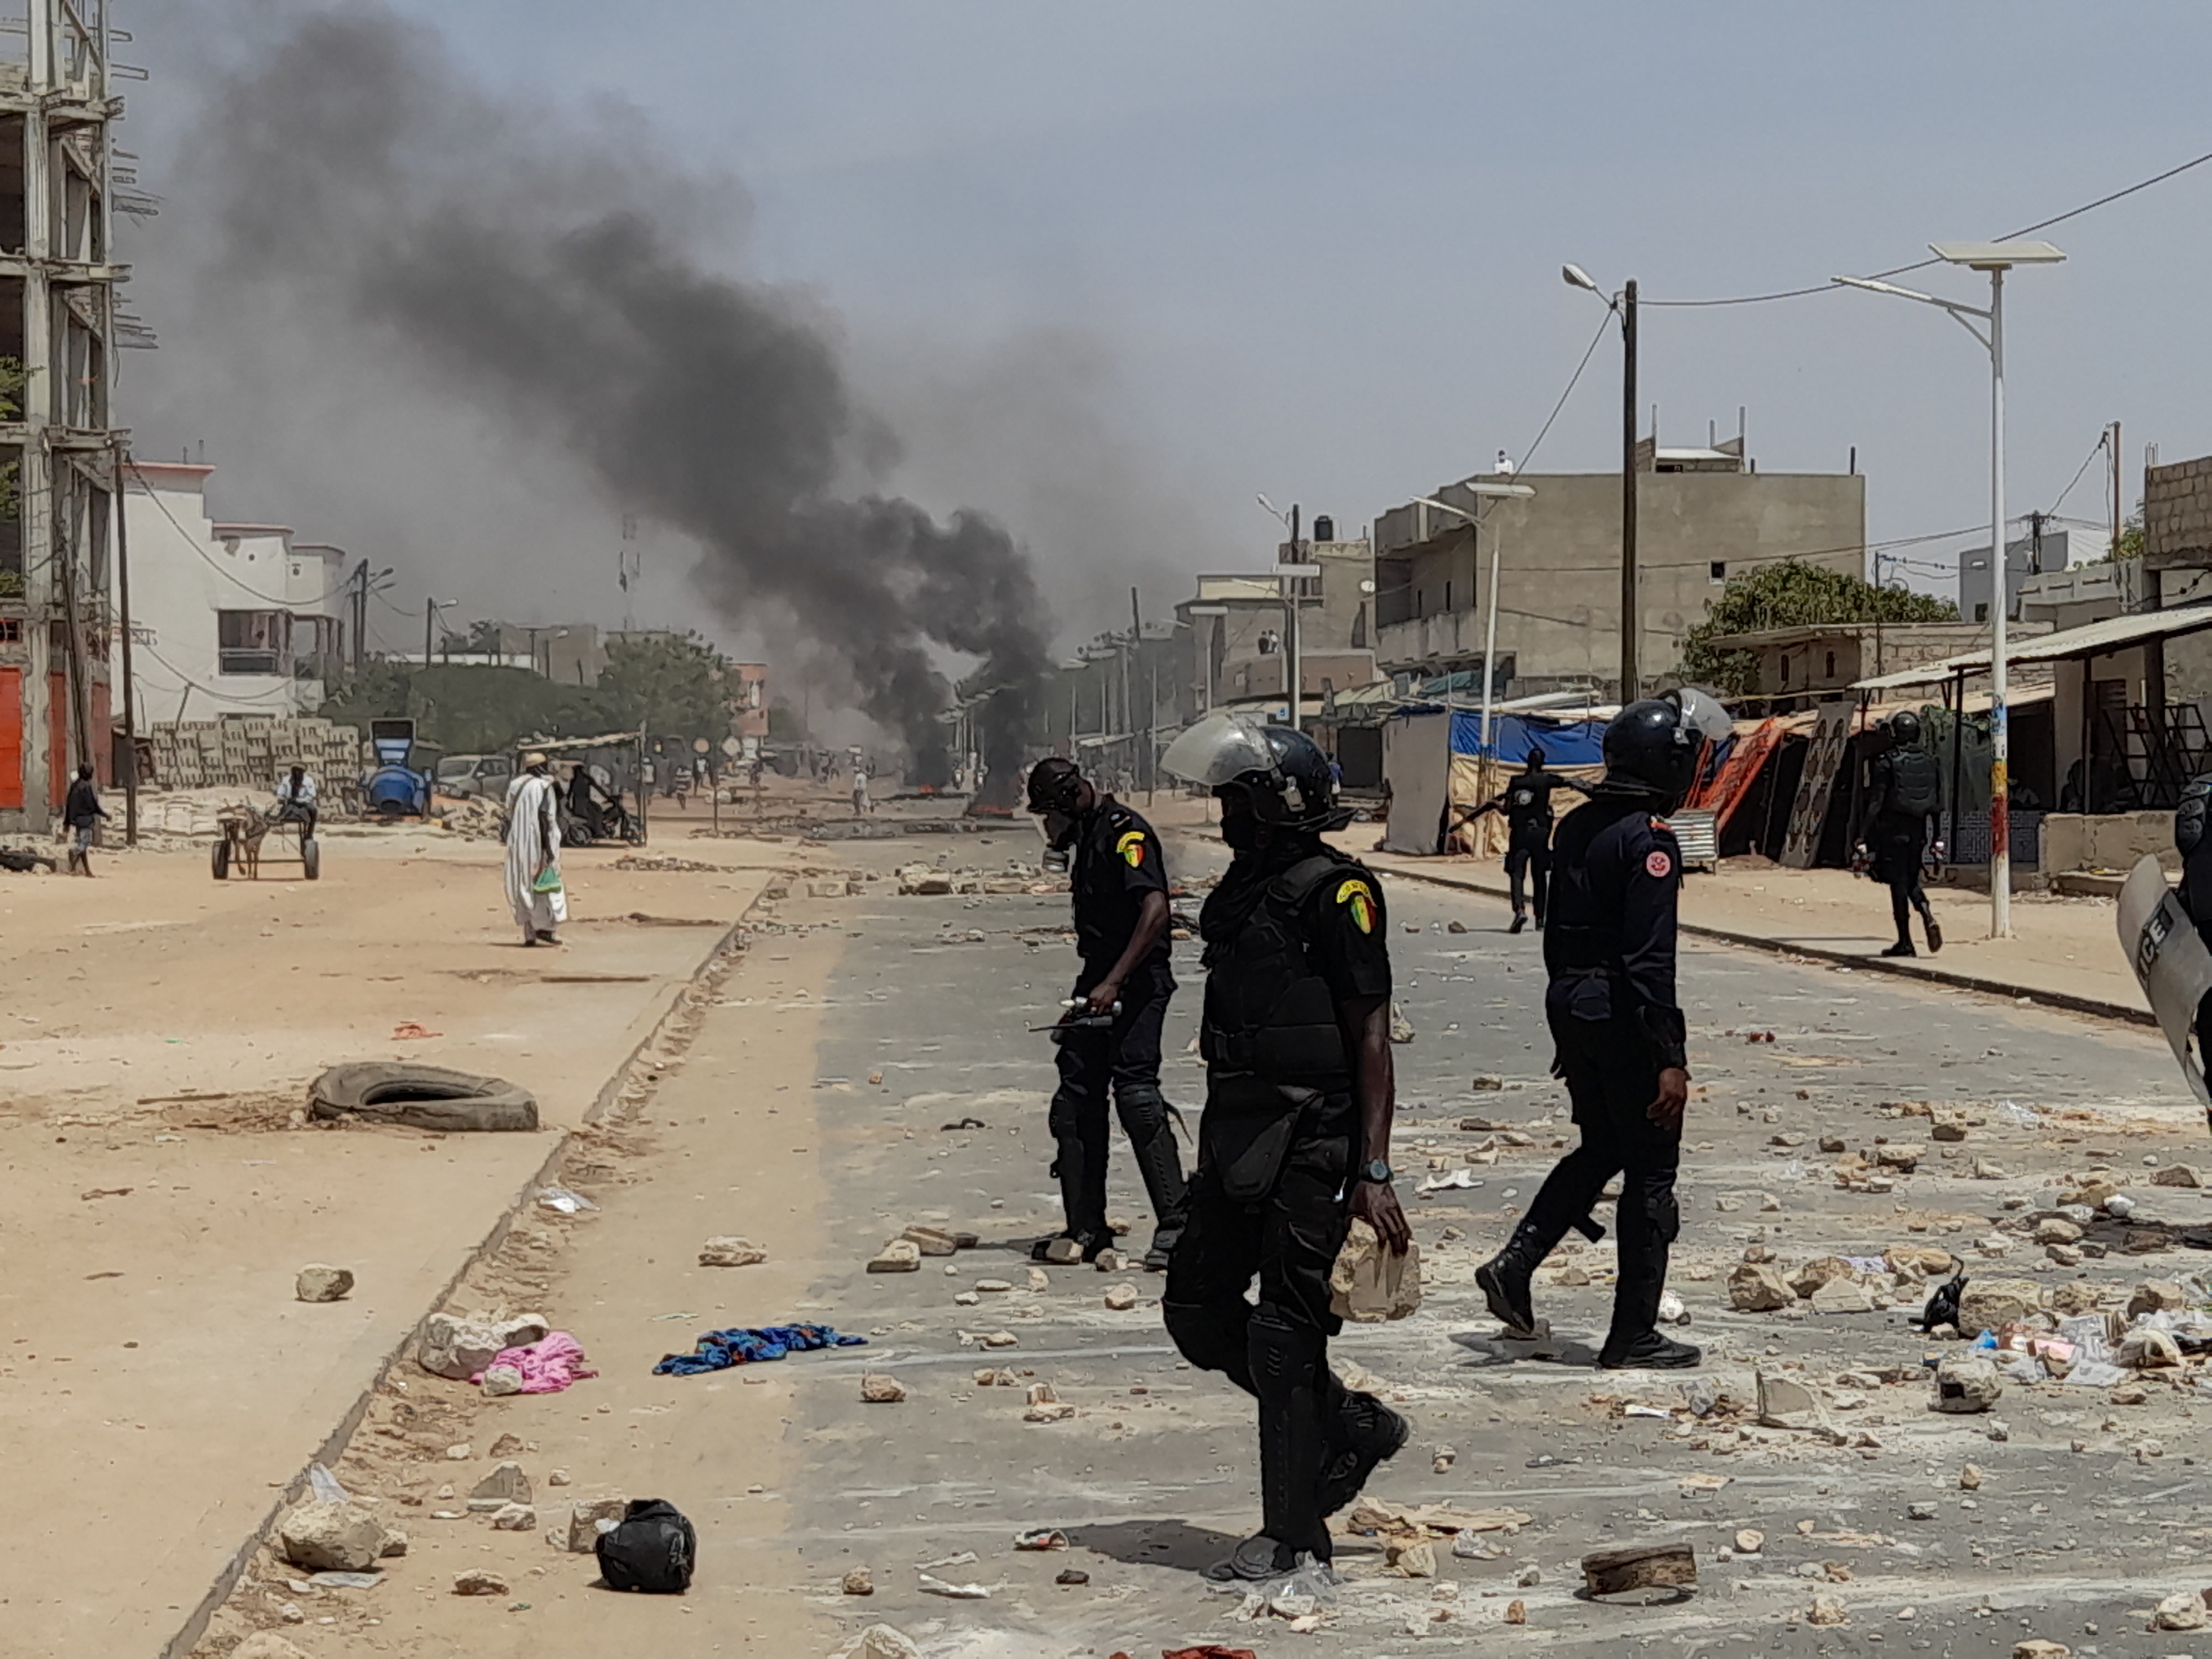 Manifestations de mars 2023 dans la zone centre : 5 personnes interpellées dont Matar Guèye inculpé d'incendie volontaire (Parquet Général près la Cour d'appel de Kaolack)